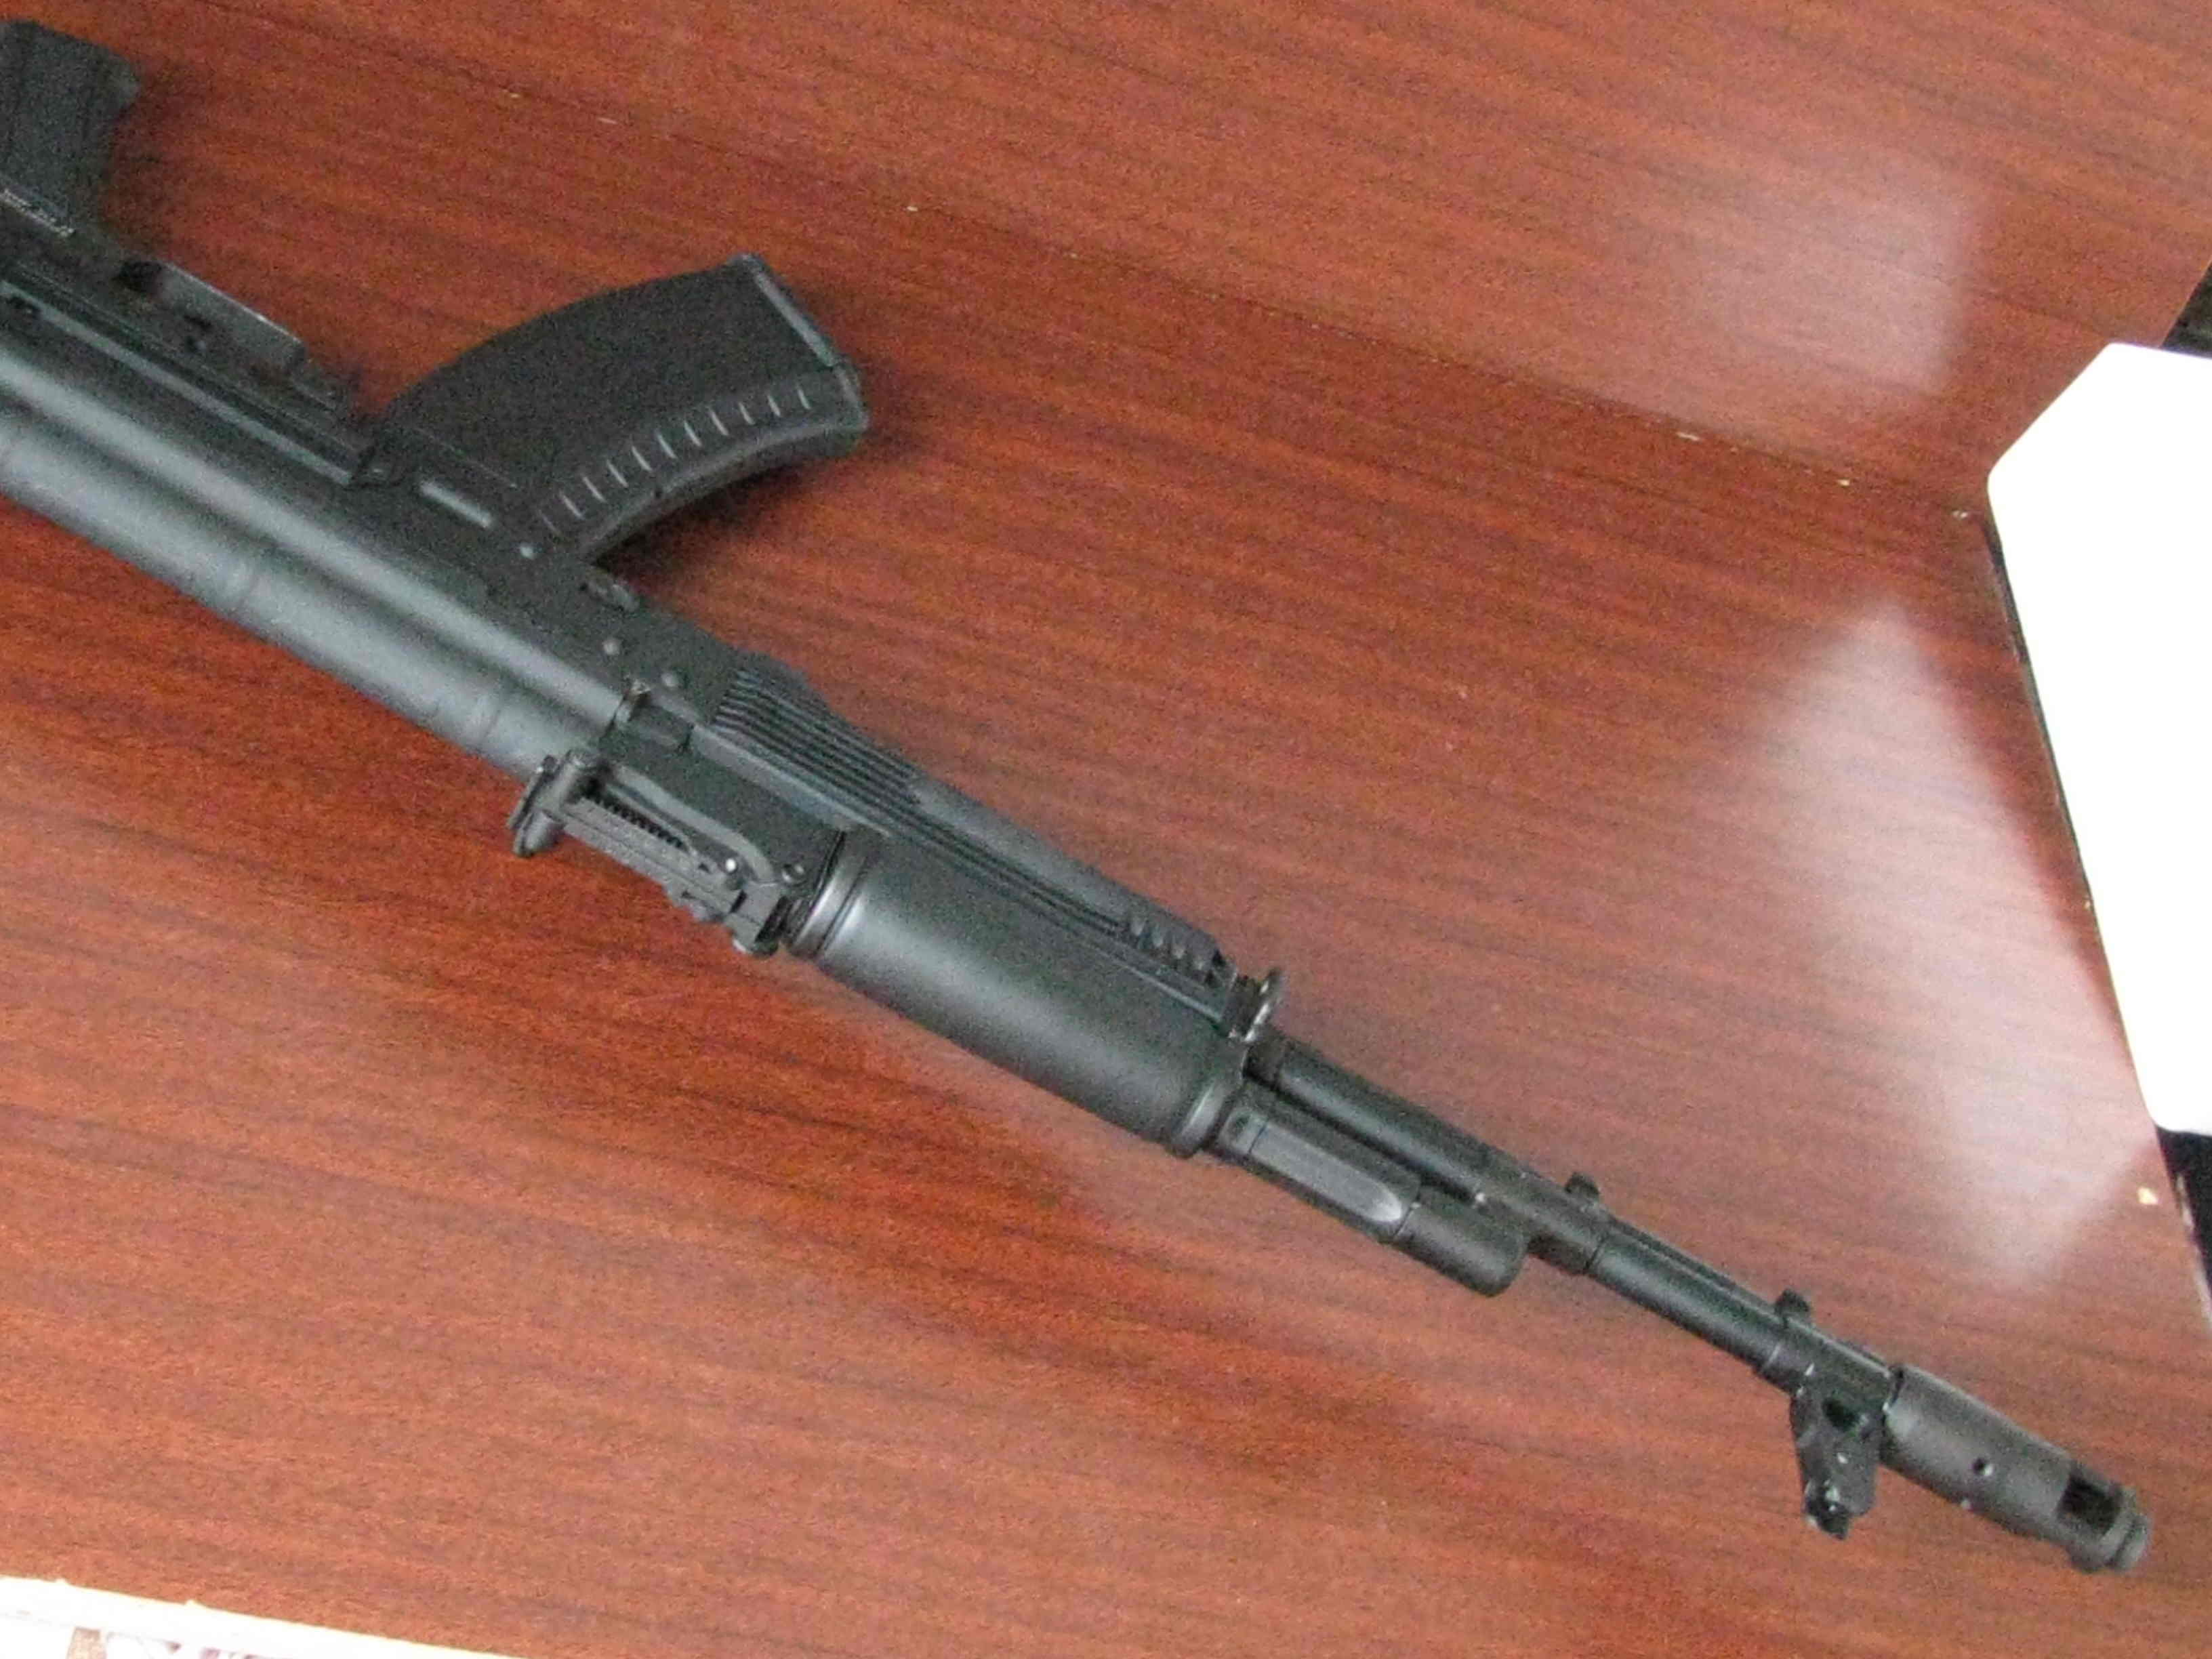 AK-74M от KSC, GBR (Автомат Калашникова, АК-74М страйКбольный)